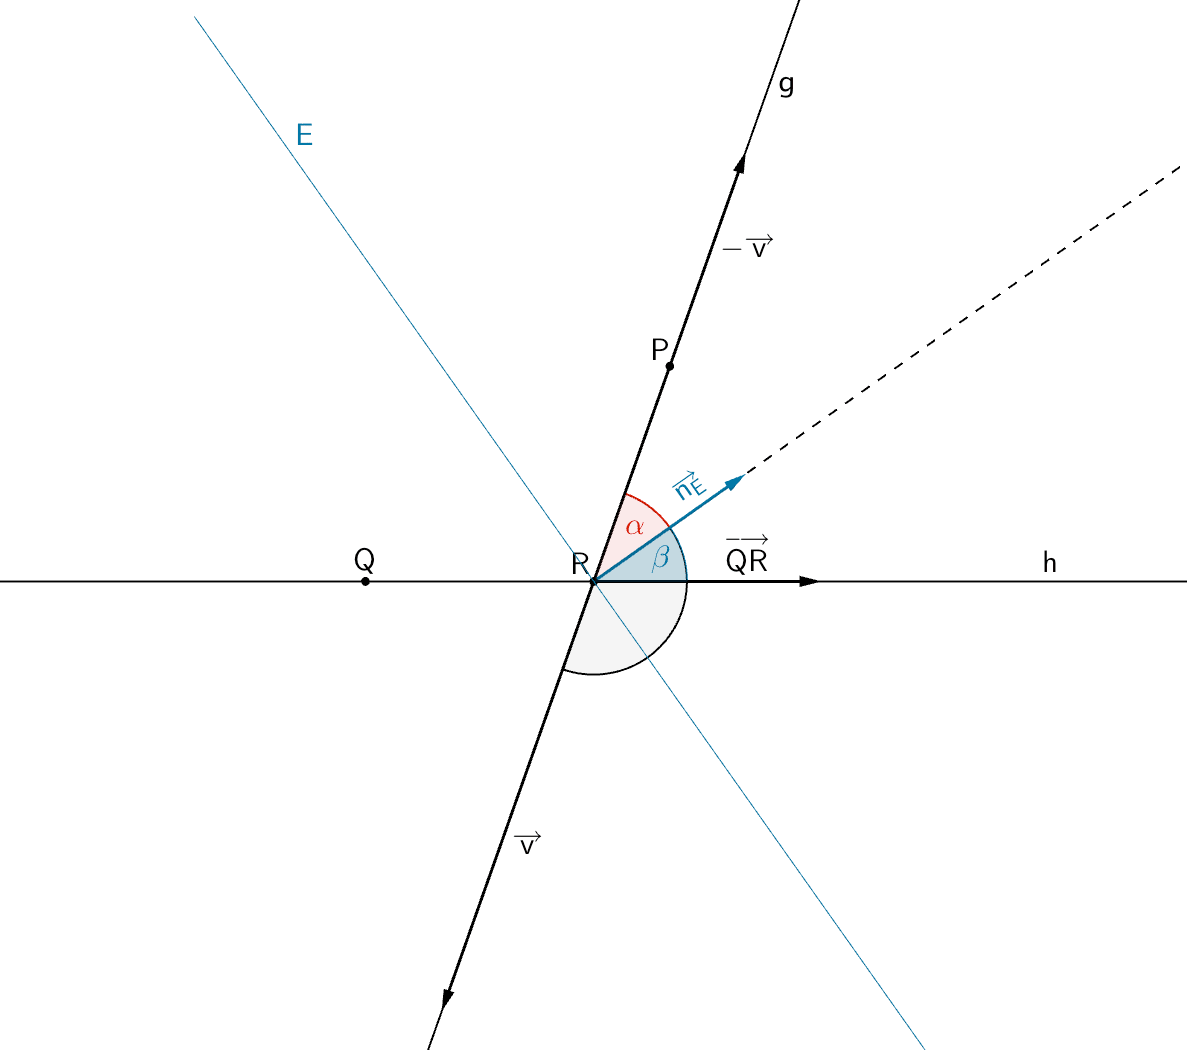 Winkel α zwischen einfallendem Lichtstrahl und Einfallslot, Winkel β zwischen reflektiertem Lichtstrahl und Einfallslotl